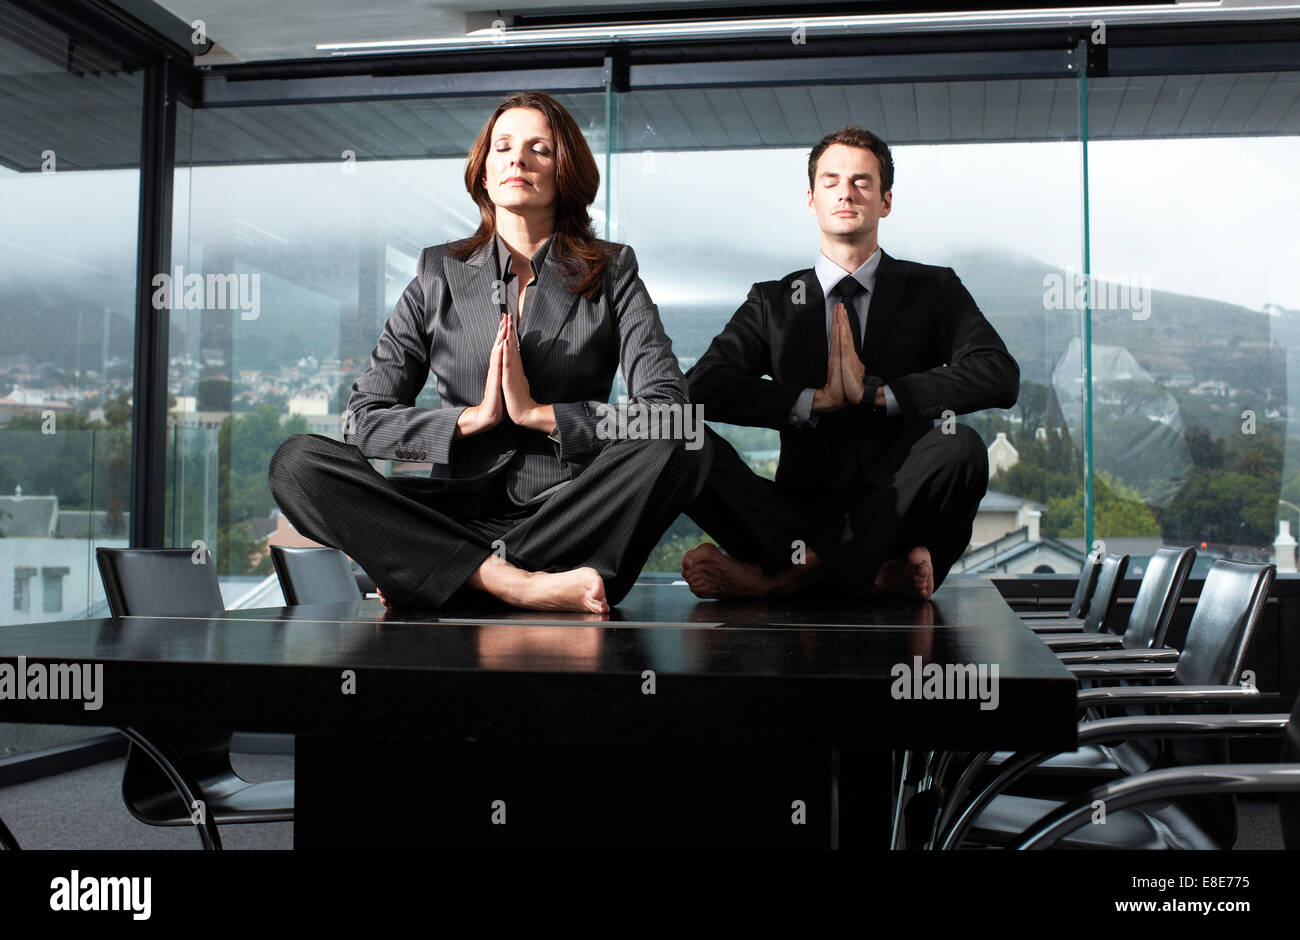 Использование фотографии без согласия. Медитация в офисе. Мужчина медитирует в офисе. Бизнес медитация. Спокойствие в офисе.